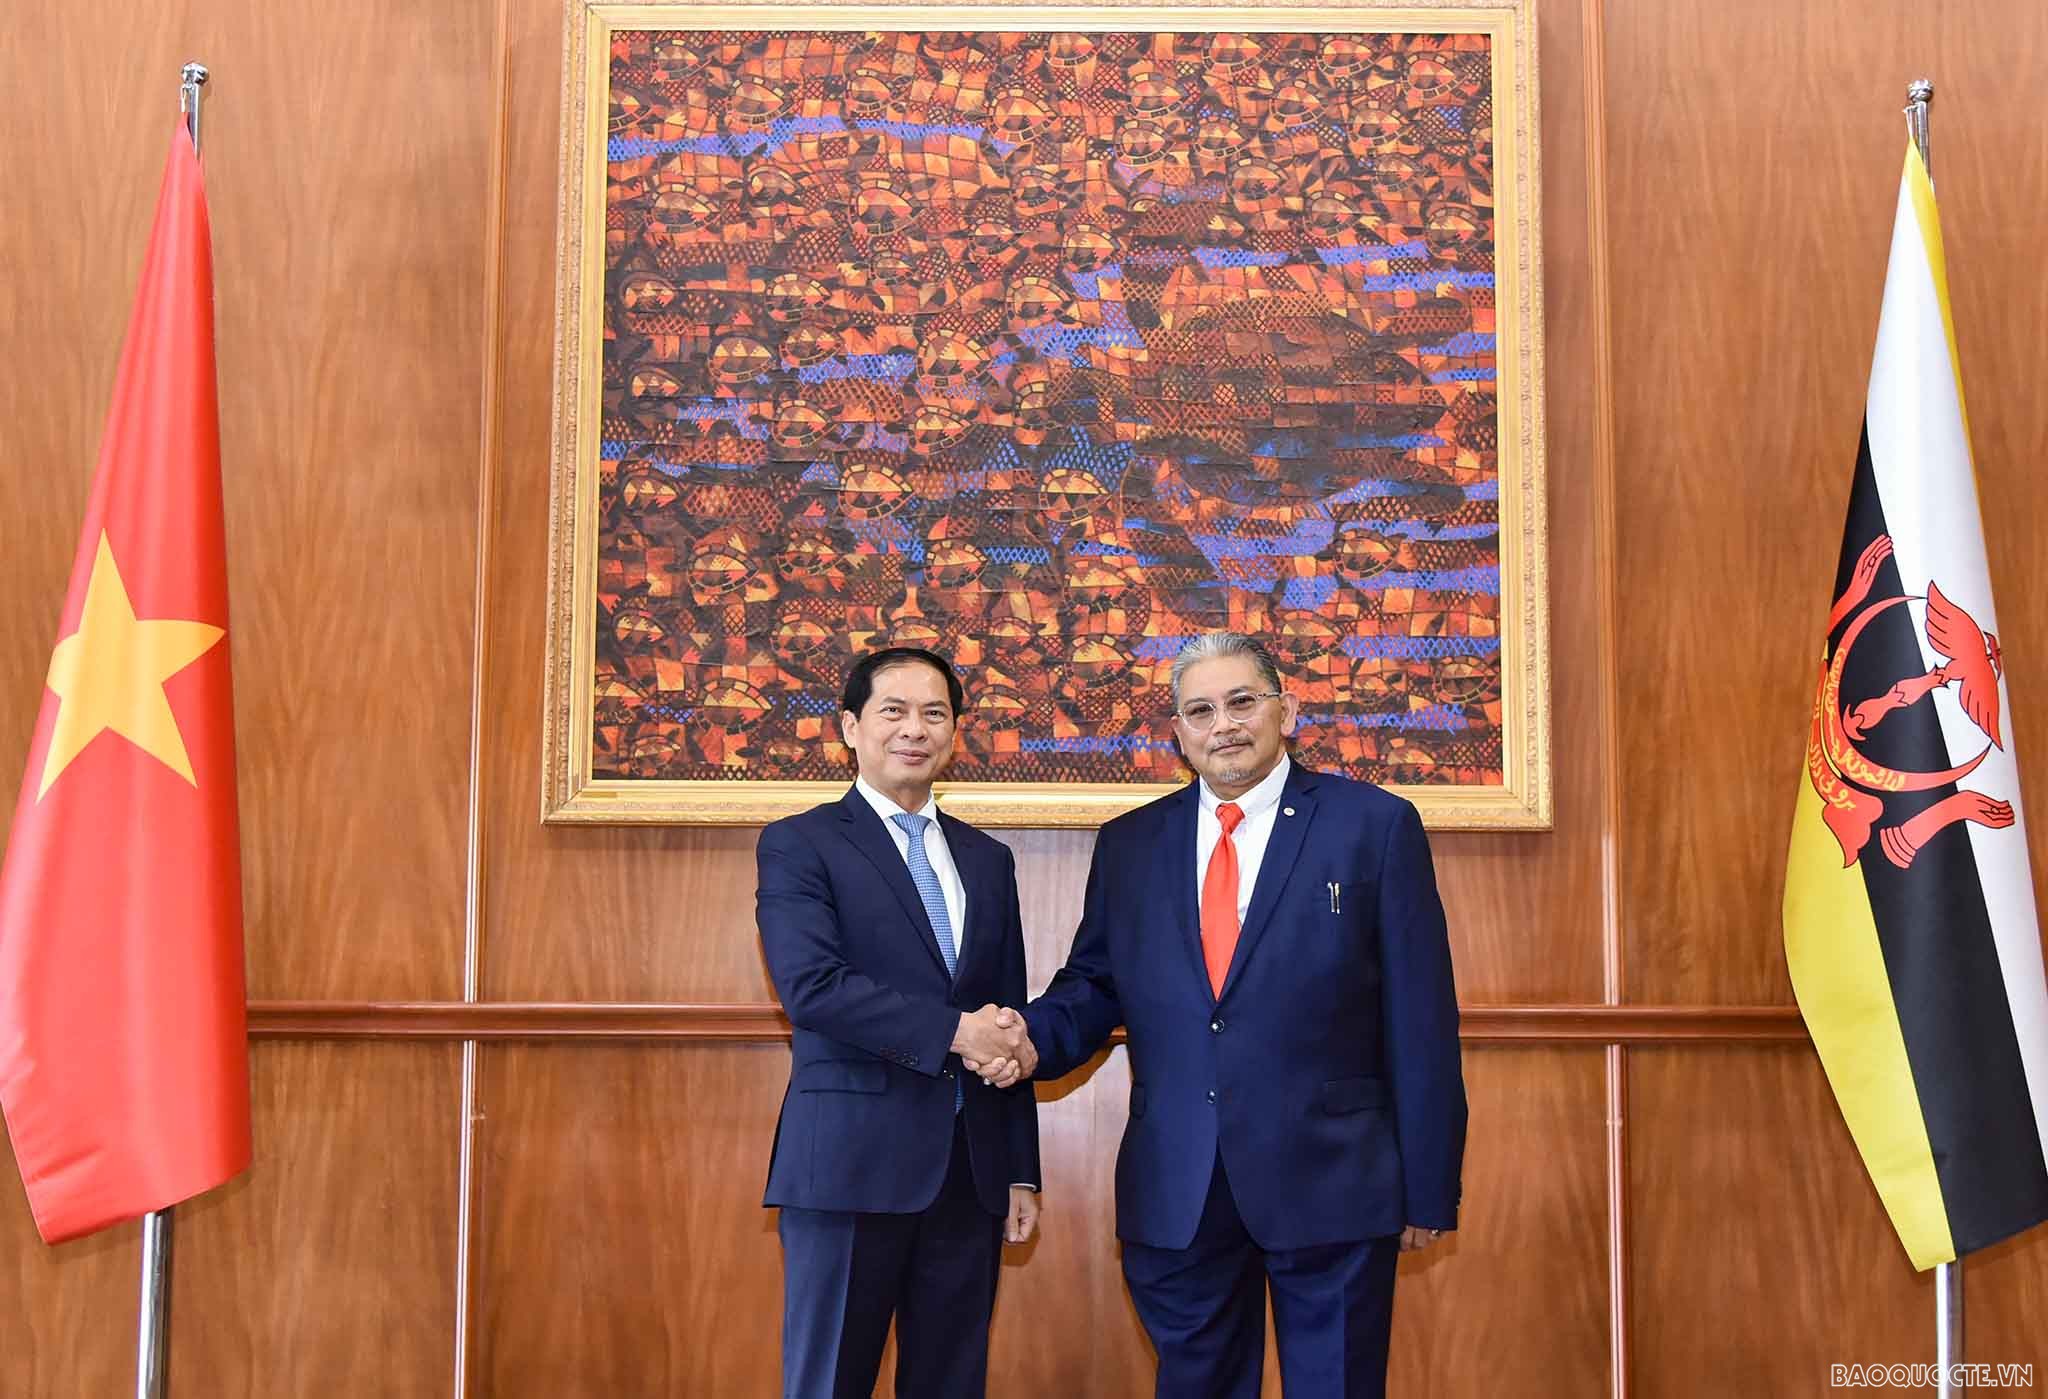 Bộ trưởng Ngoại giao Bùi Thanh Sơn đồng chủ trì Kỳ họp lần 2 Ủy ban hỗn hợp về Hợp tác song phương Việt Nam-Brunei